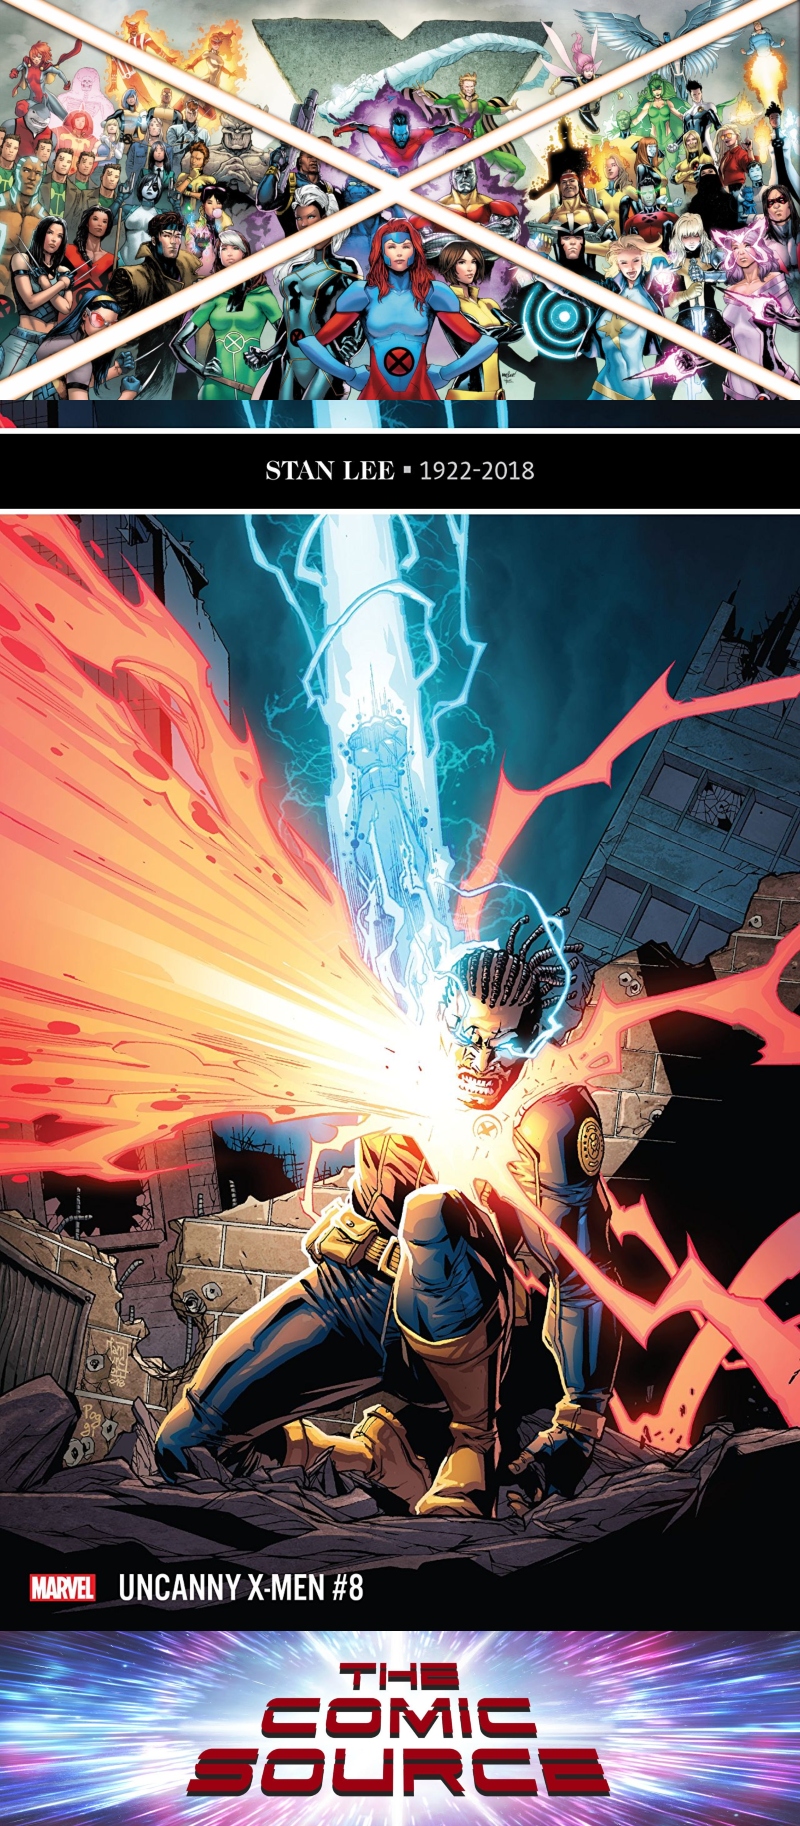 Uncanny X-Men #8 Spotlight: The Comic Source Podcast Episode #669